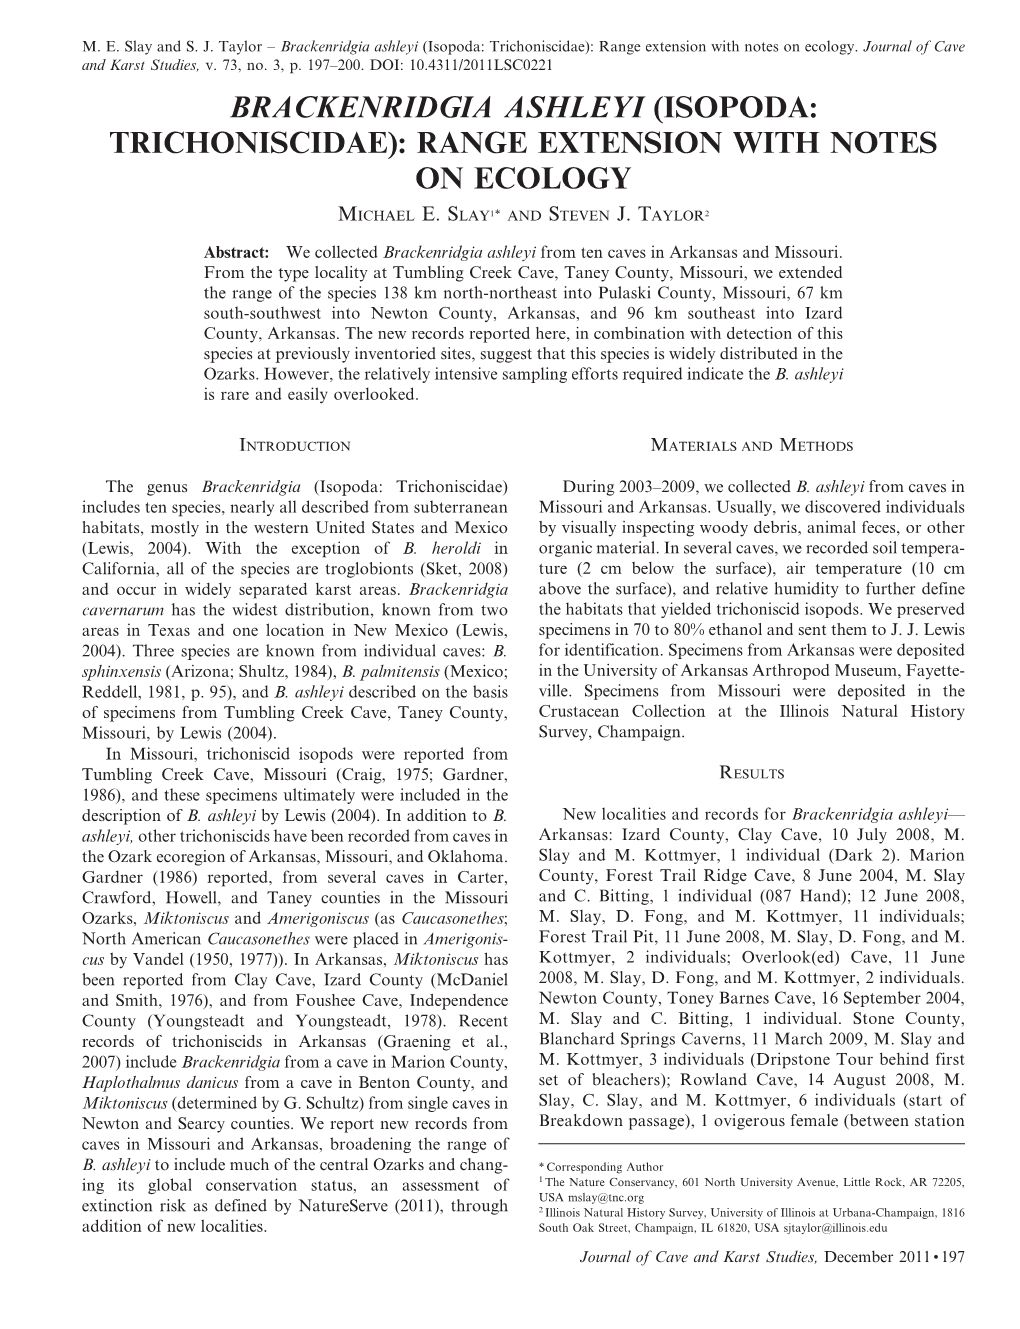 Brackenridgia Ashleyi (Isopoda: Trichoniscidae): Range Extension with Notes on Ecology